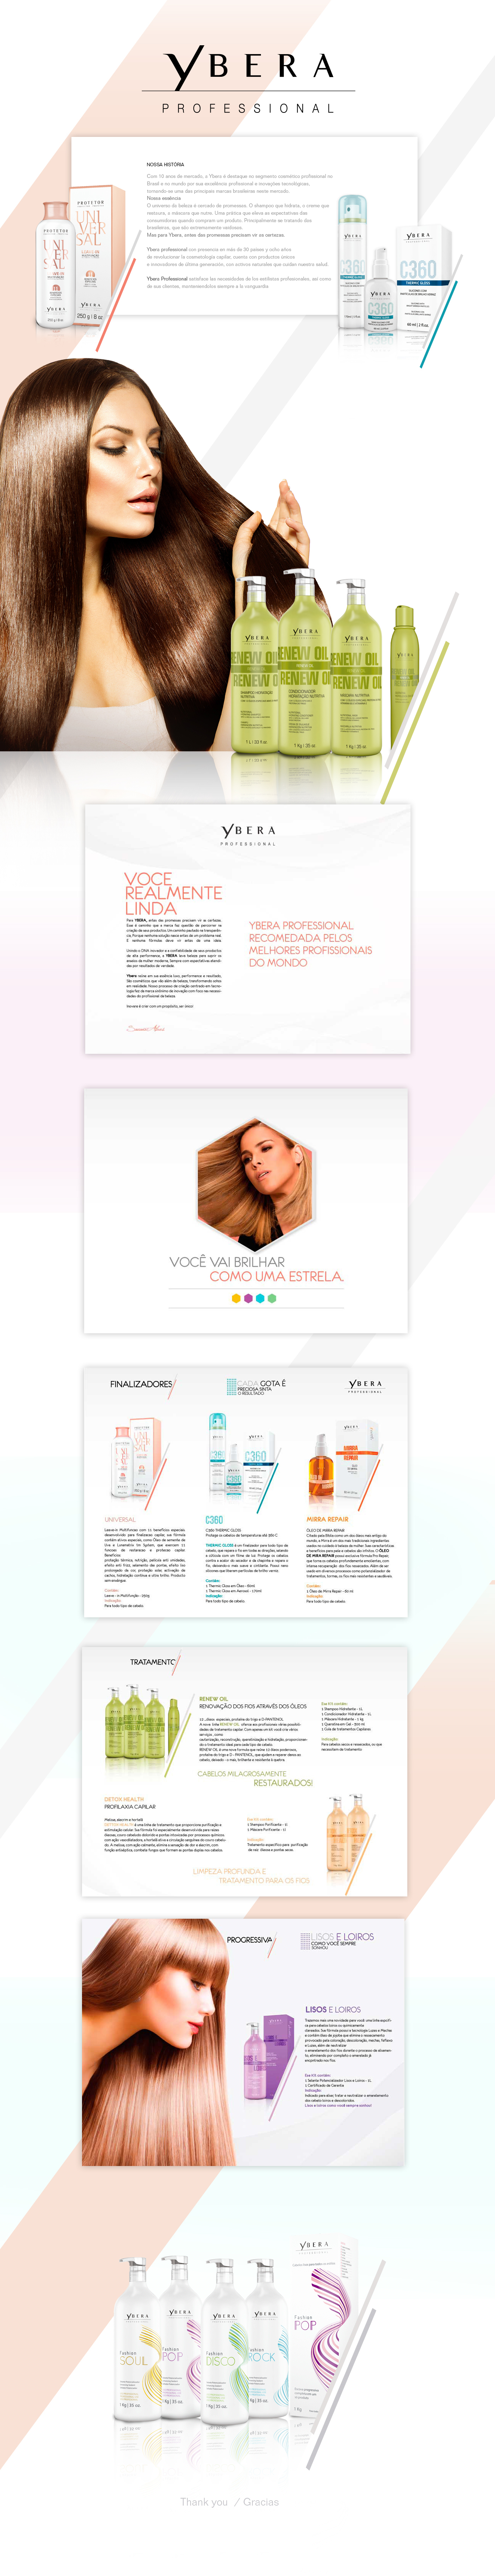 Brazil mexico estetico productos keratin marca cosmetics editorial brochure mockups